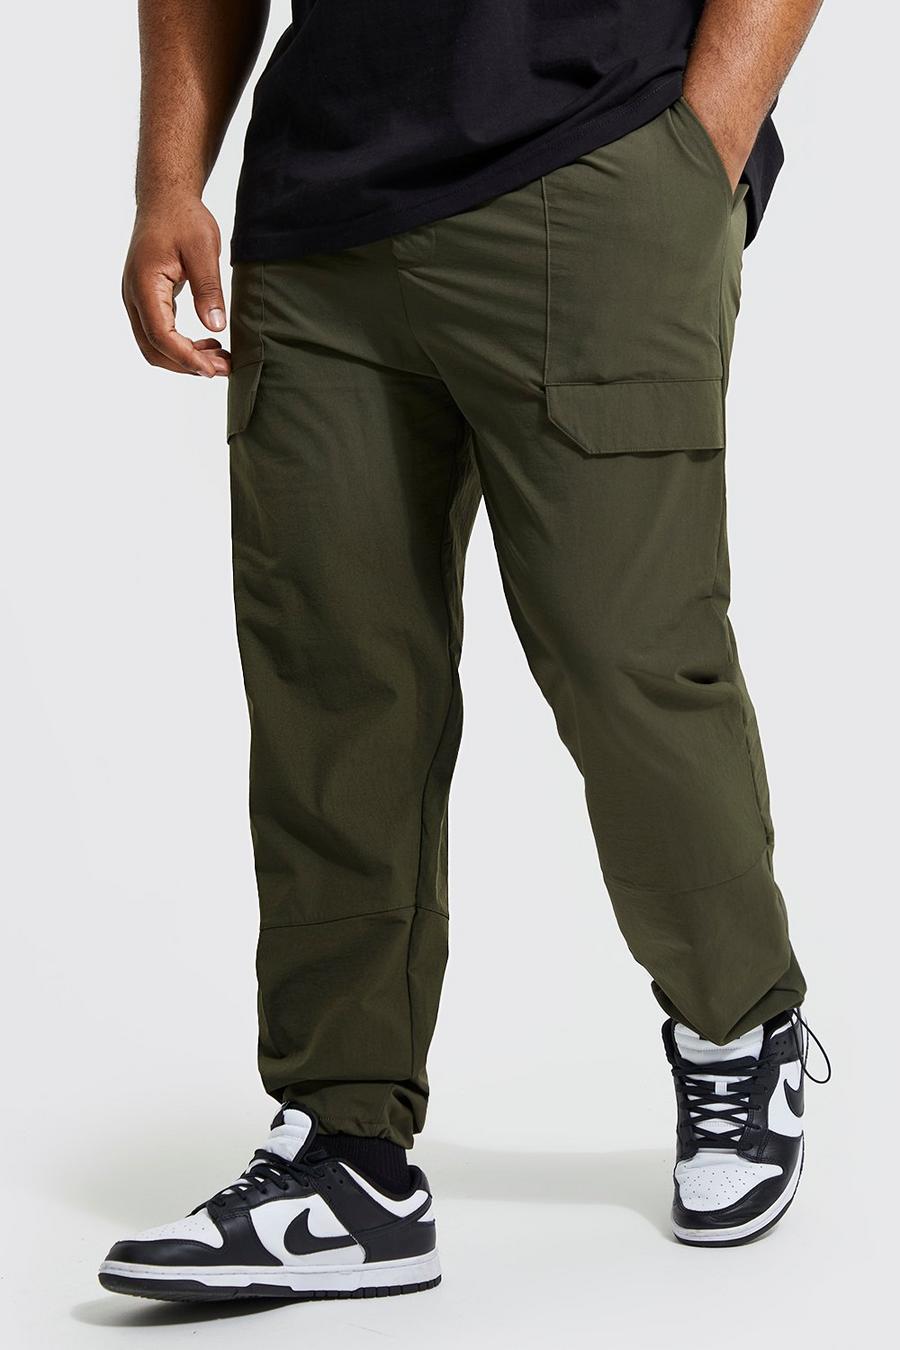 זית verde מכנסיים בגזרה צרה עם פאנל בסגנון מכנסי עבודה מסדרת Ofcl, מידות גדולות